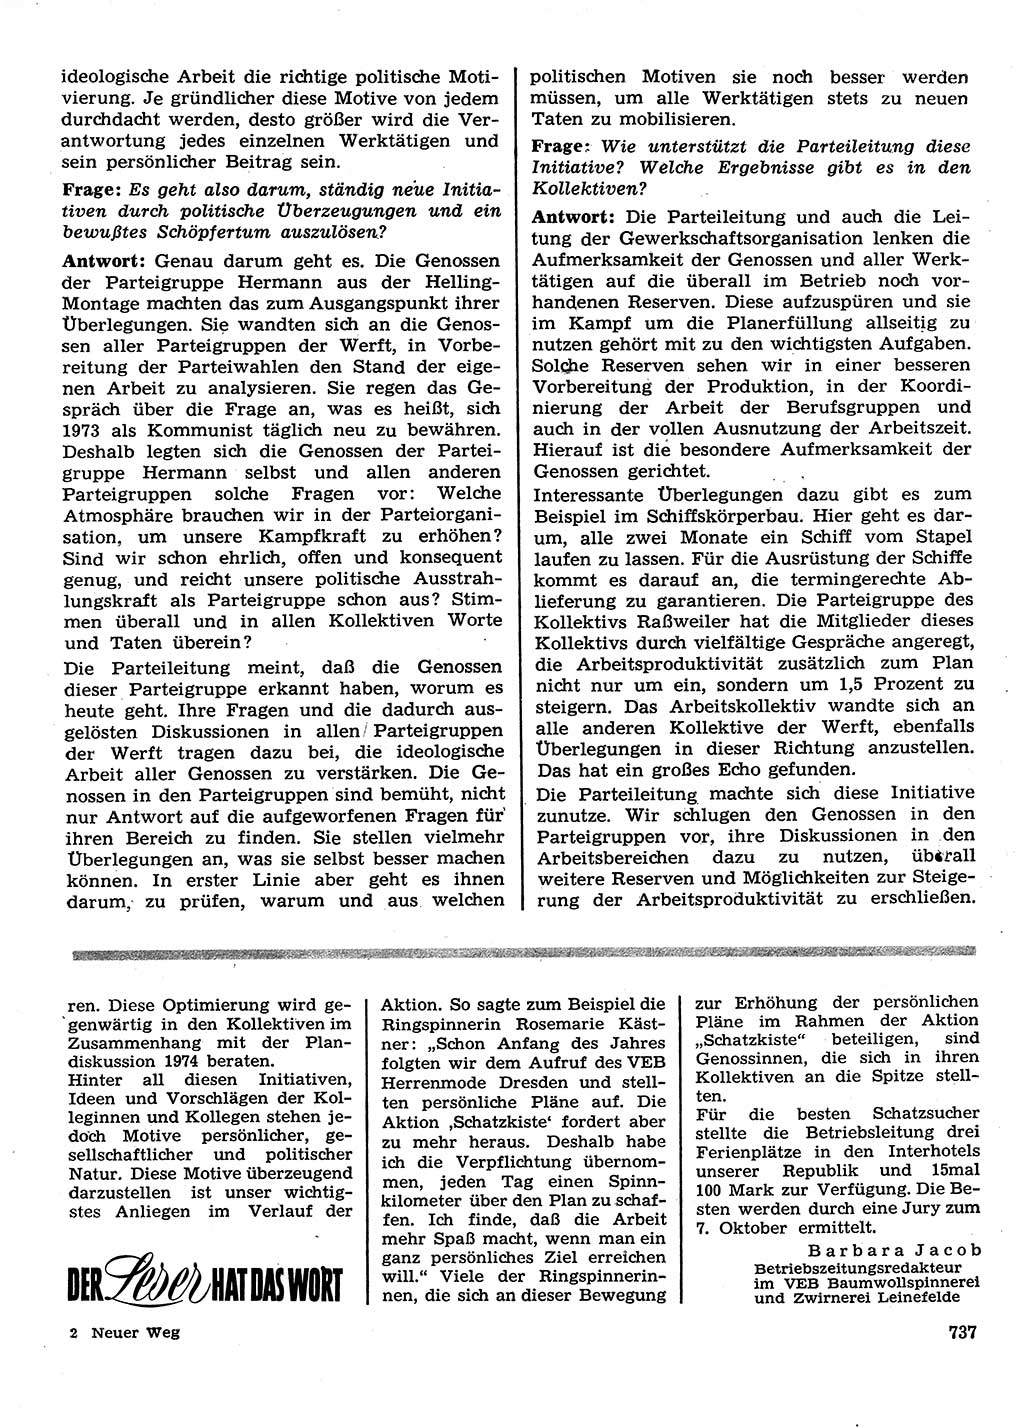 Neuer Weg (NW), Organ des Zentralkomitees (ZK) der SED (Sozialistische Einheitspartei Deutschlands) für Fragen des Parteilebens, 28. Jahrgang [Deutsche Demokratische Republik (DDR)] 1973, Seite 737 (NW ZK SED DDR 1973, S. 737)